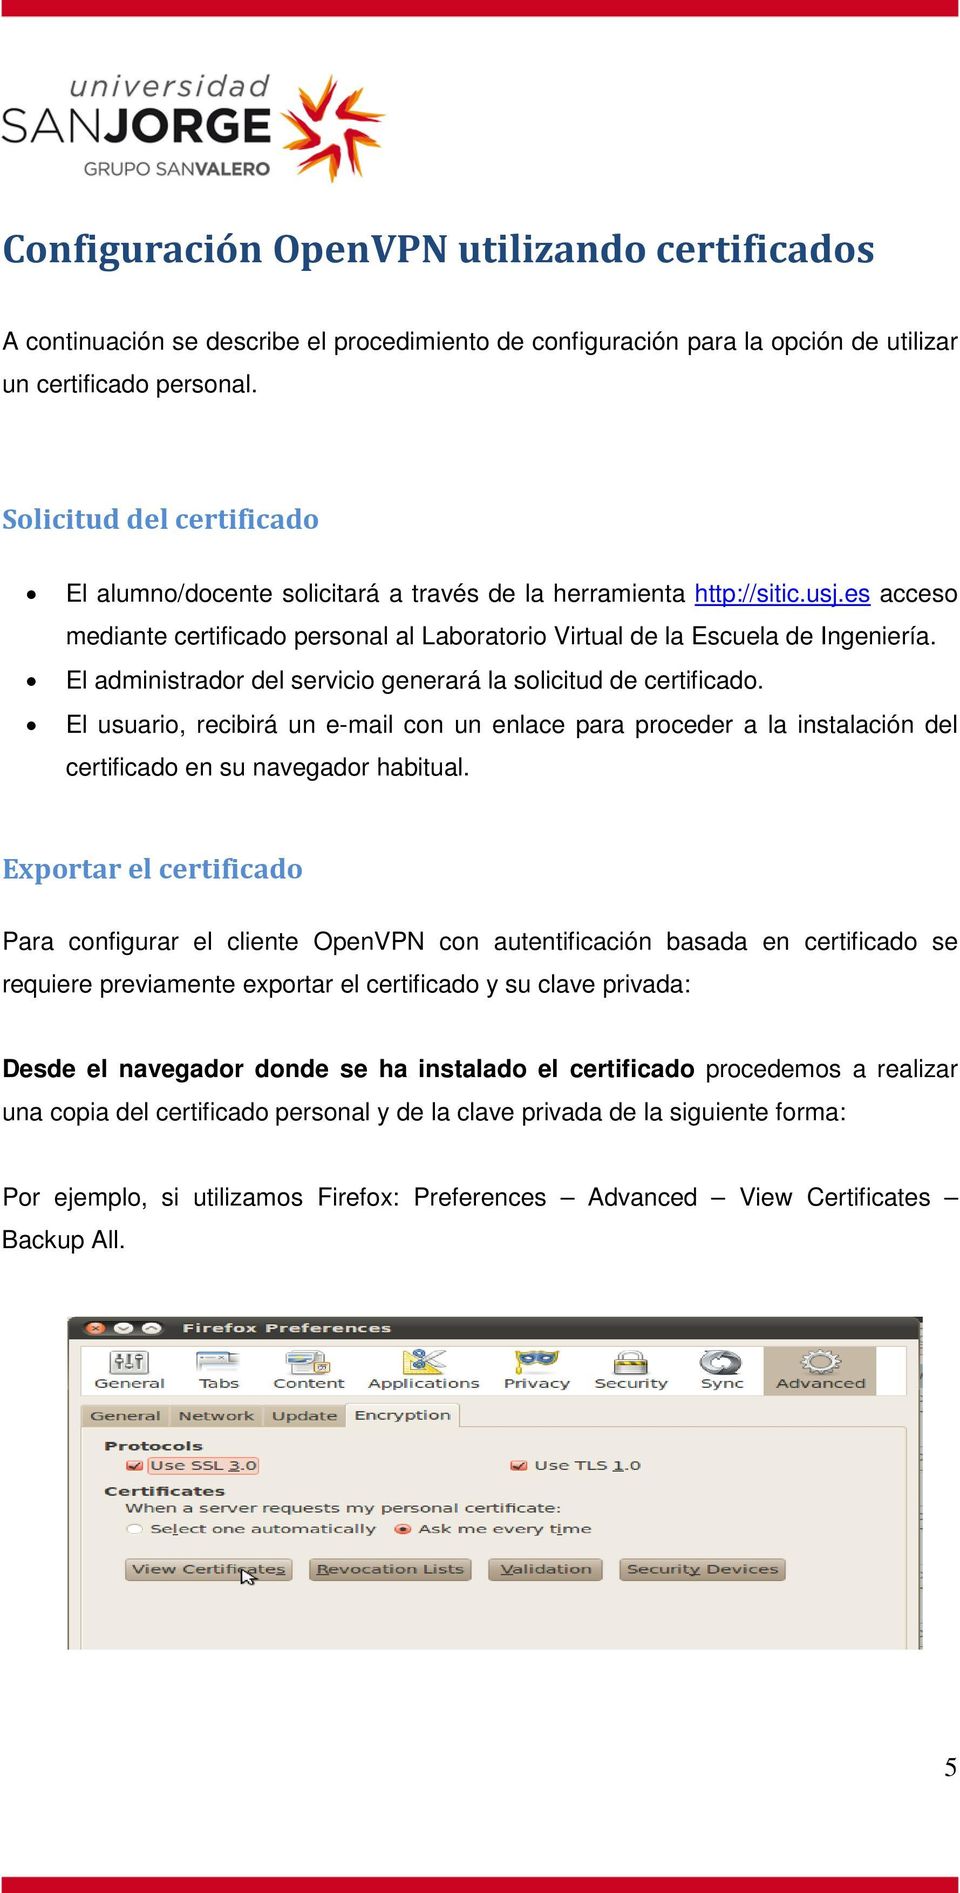 El administrador del servicio generará la solicitud de certificado. El usuario, recibirá un e-mail con un enlace para proceder a la instalación del certificado en su navegador habitual.